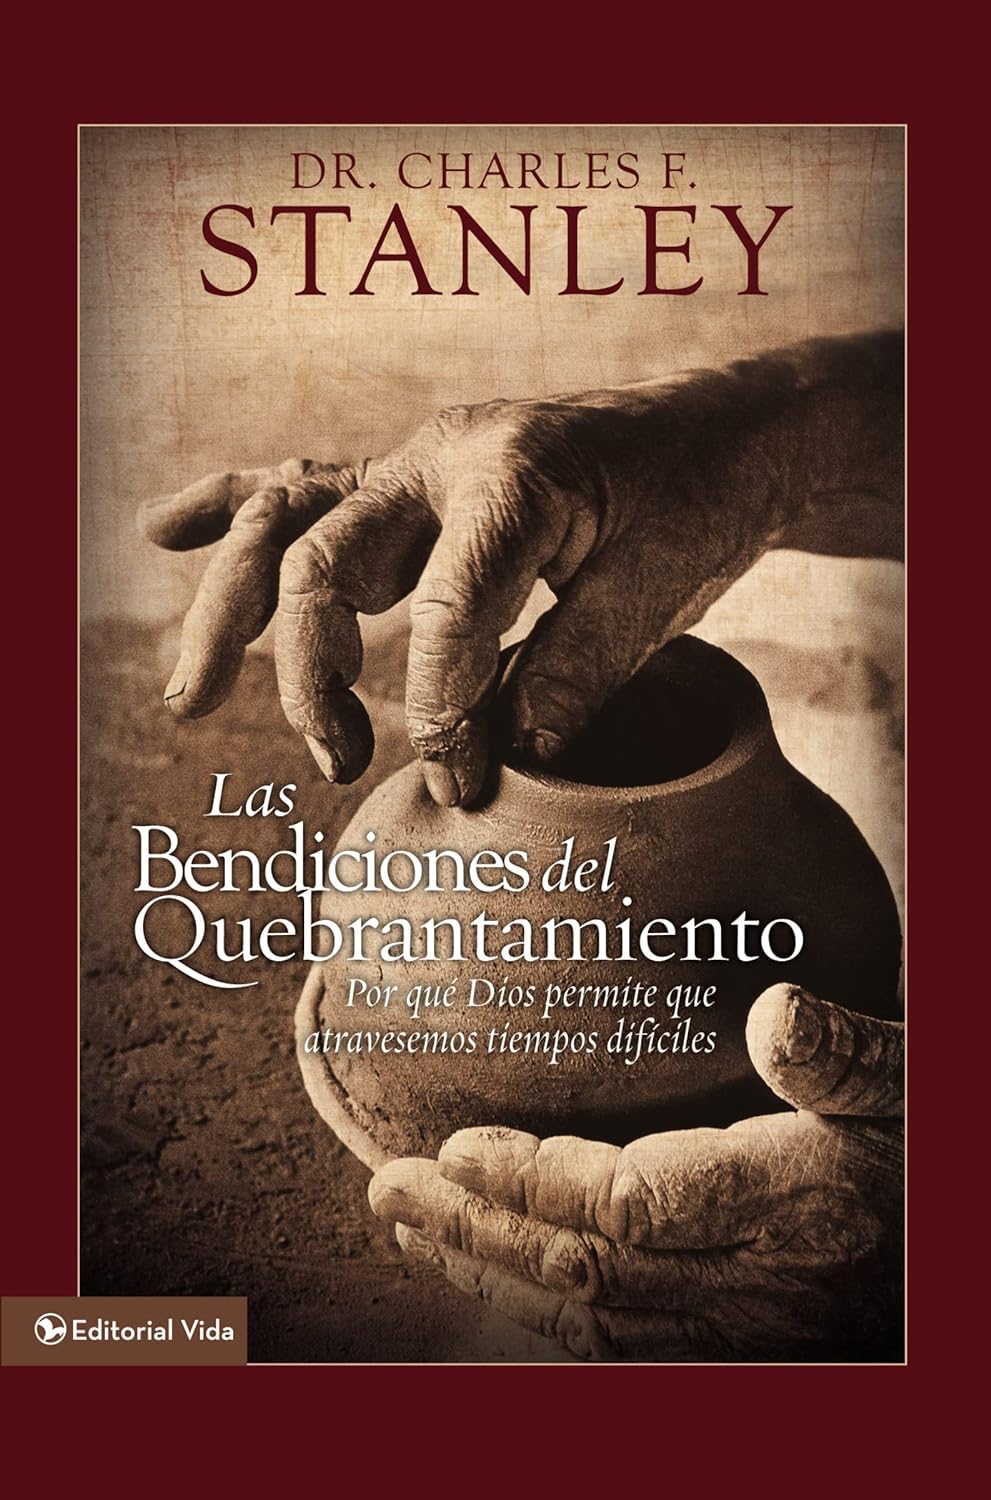 Las bendiciones del quebrantamiento: Por qué Dios permite que atravesemos tiempos difíciles (Spanish Edition)